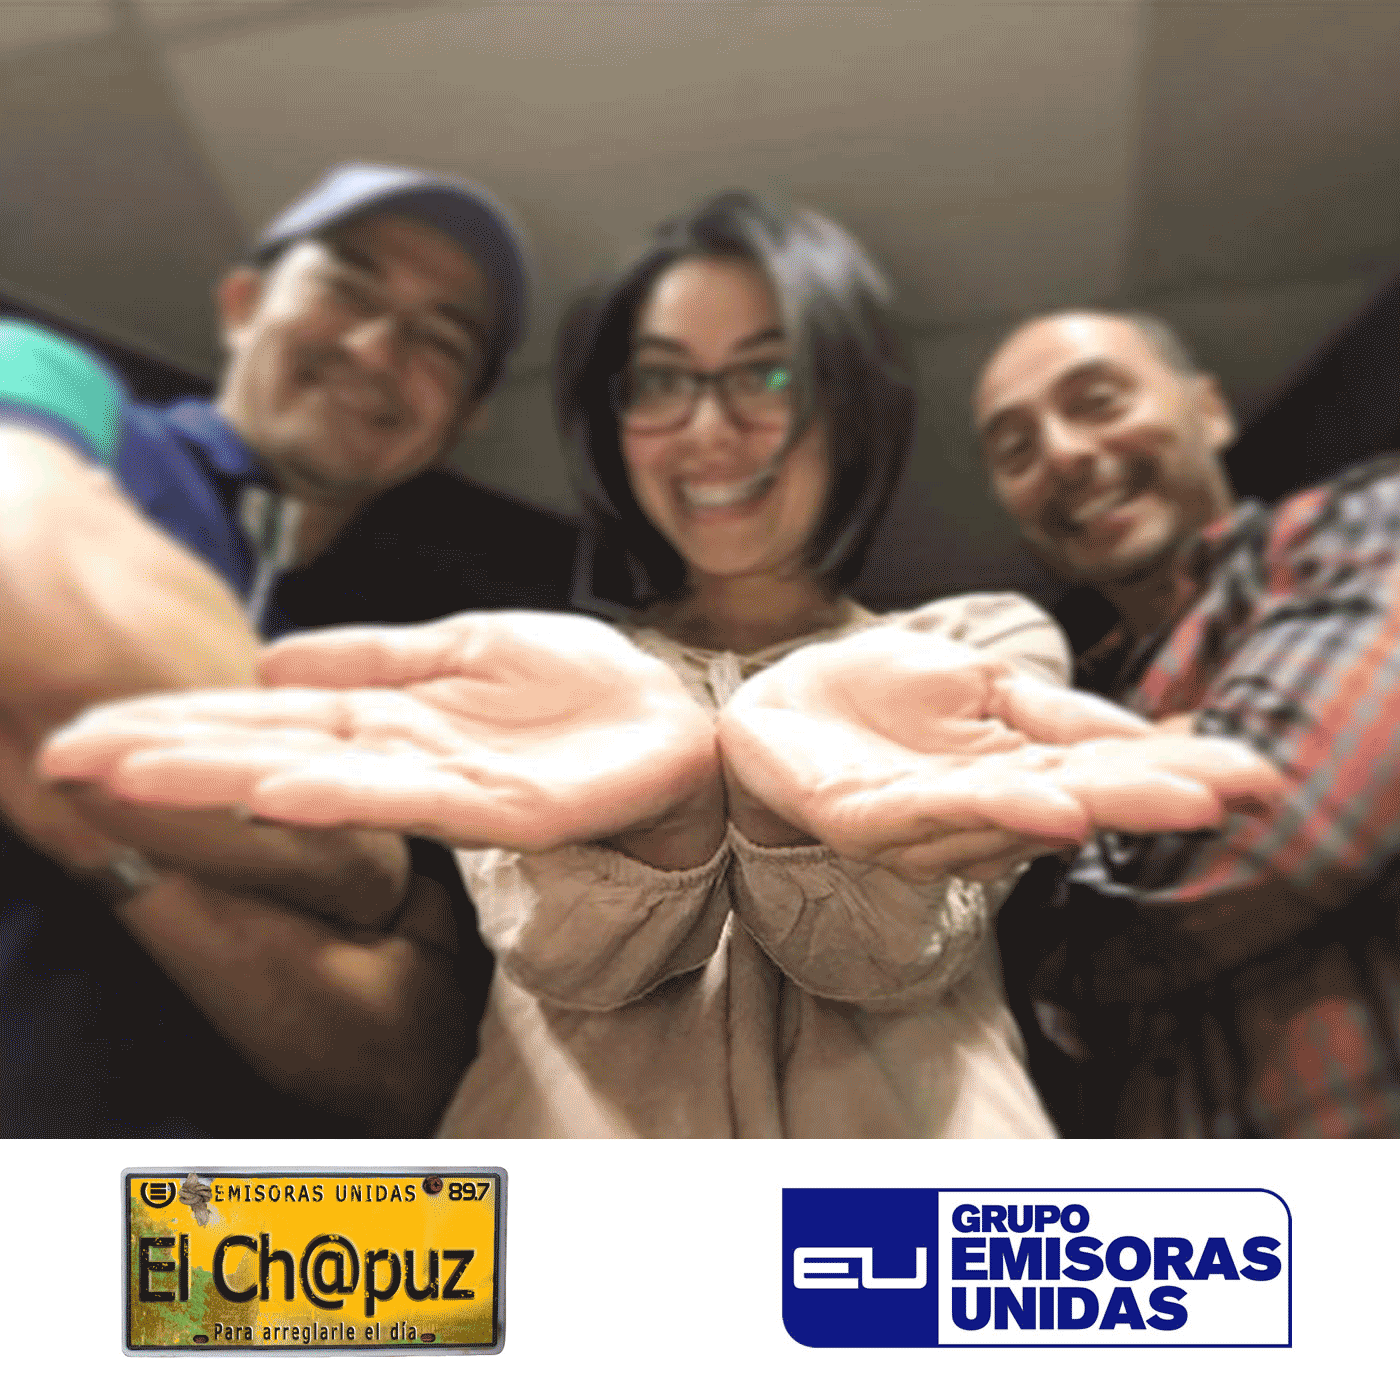 EC07 - El Chapuz - Emisoras unidas - #DeGüiroMeEscondía 